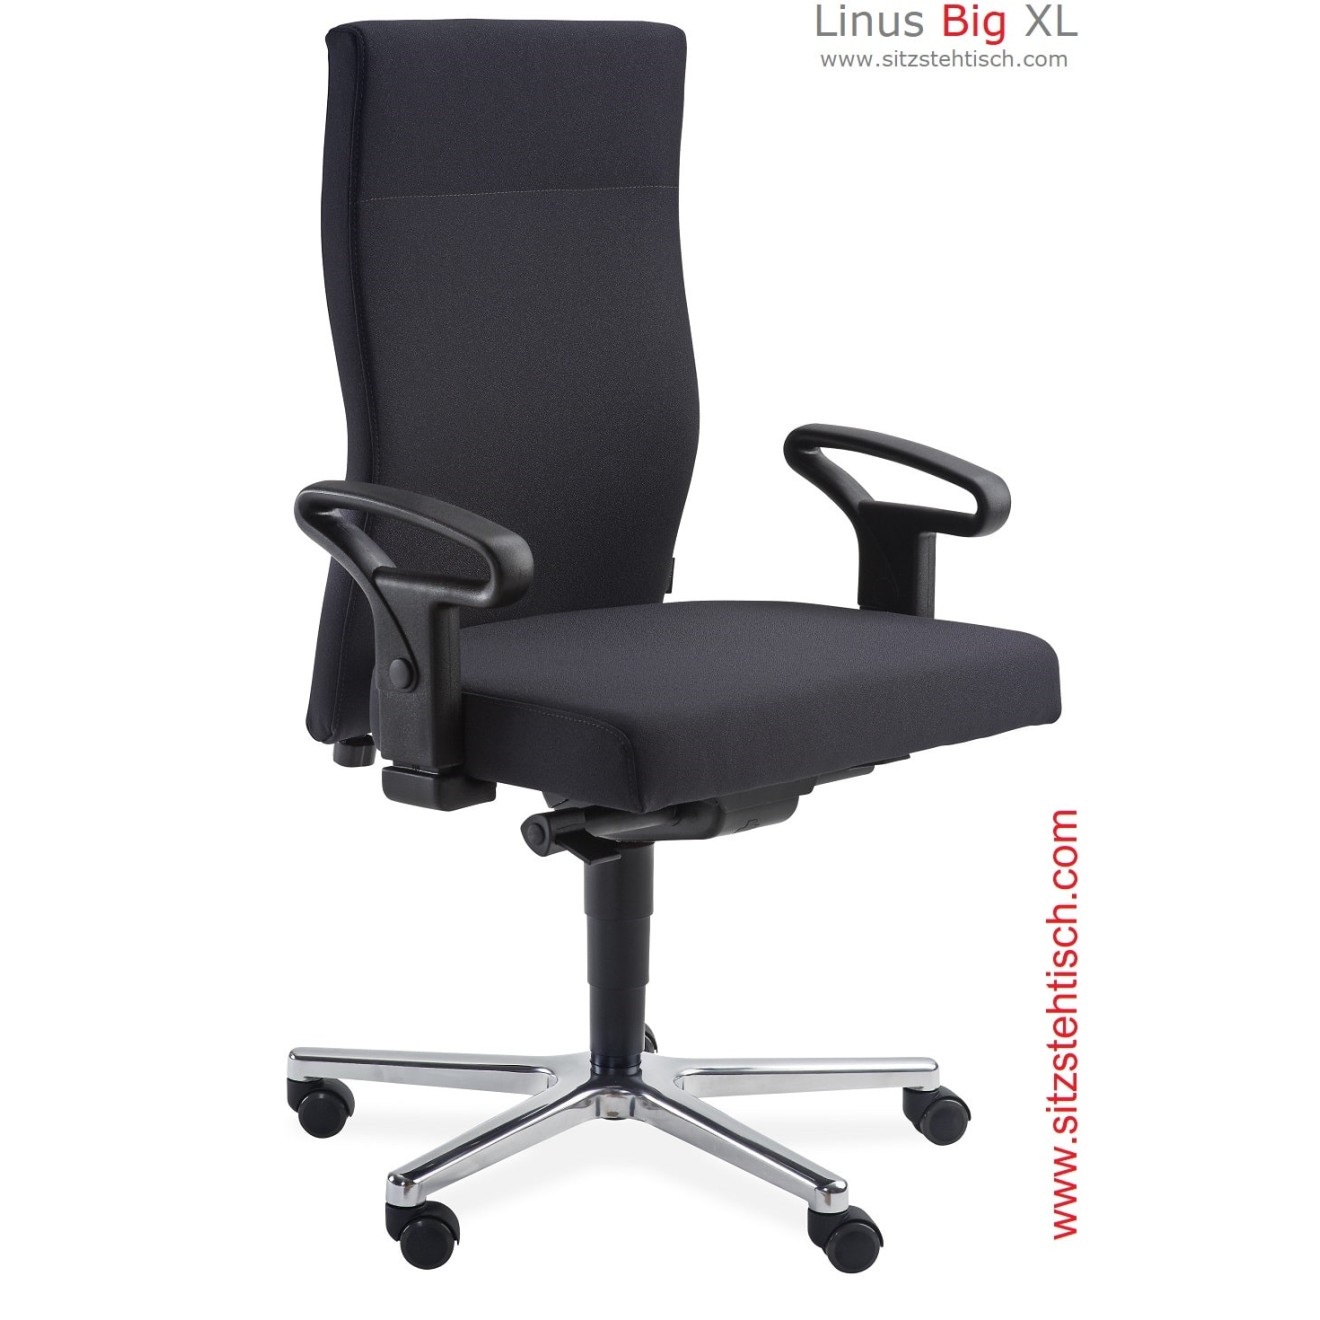 Bürostuhl Big XL - Stoff Xtreme in 20 Farben - Belastbarkeit bis 200 kg - Synchronmechanik, hohe Rückenlehne, Armlehnen - Sitzbreite und Sitztiefe anpassbar auf Anfrage - 5 Jahre Garantie